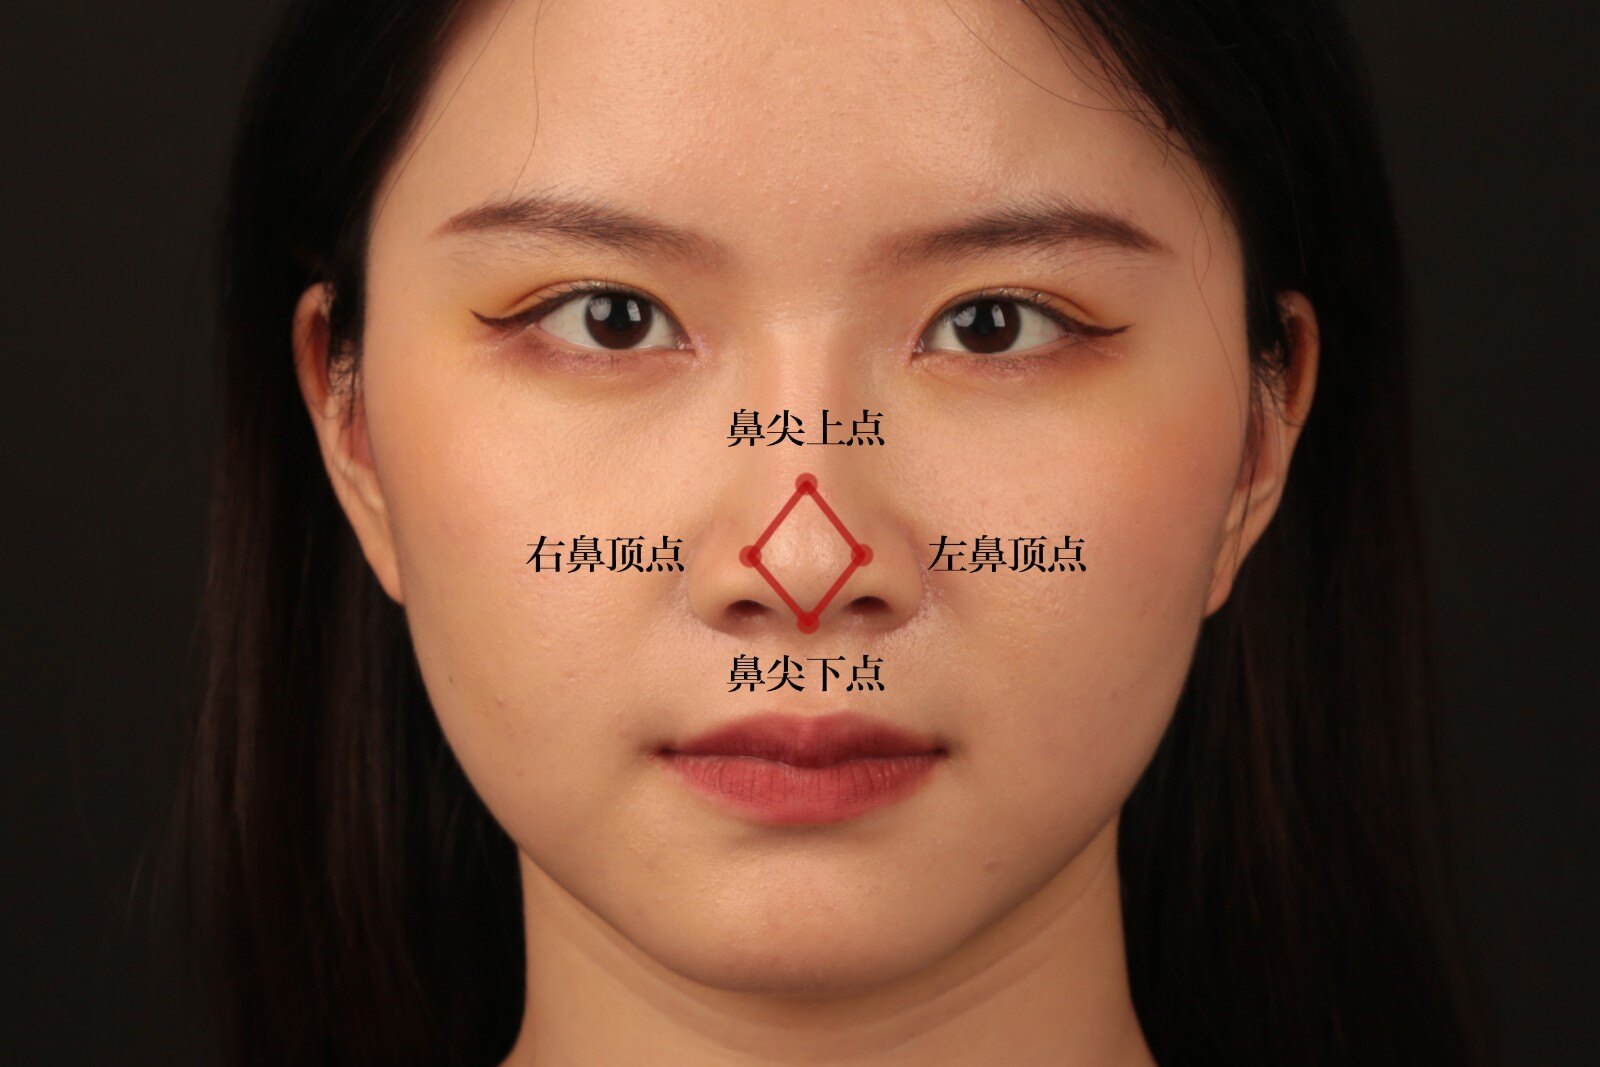 正常的鼻尖形态,鼻顶部角度为 60 度,形态 近似等边三角形.